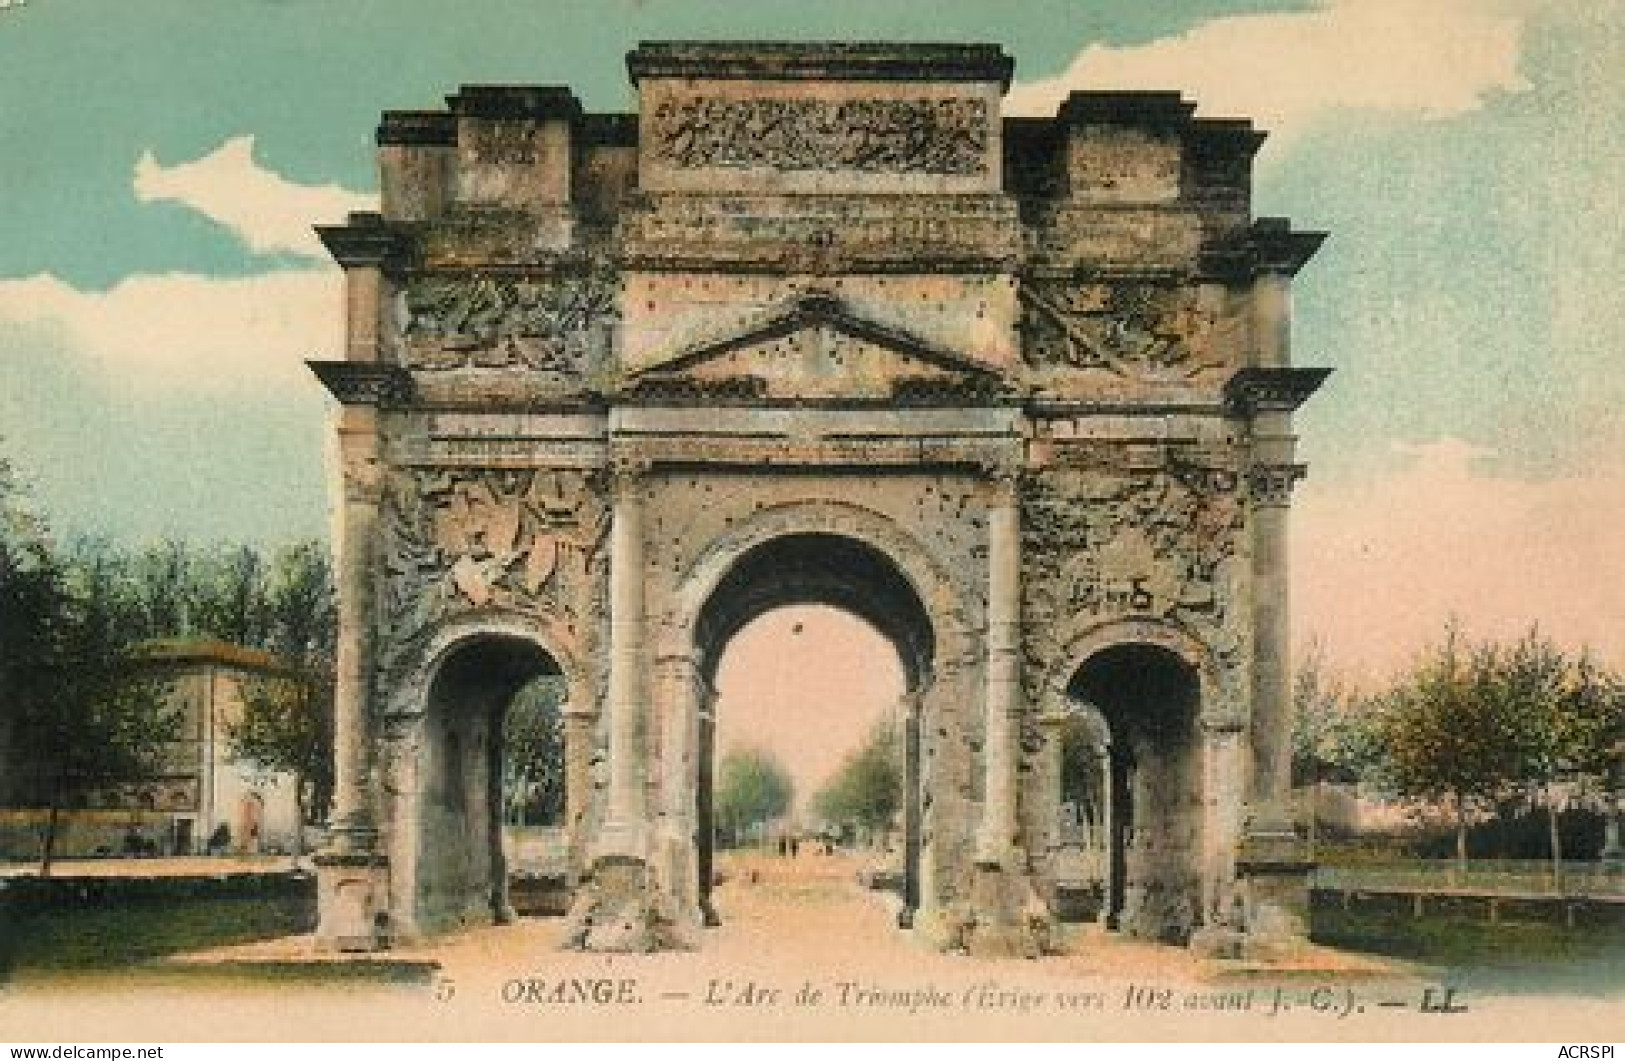  ORANGE lot de 26 vues de l'ARC de Triomphe sur differents editeurs et époques (scan recto-verso)MA2142Ter Boite